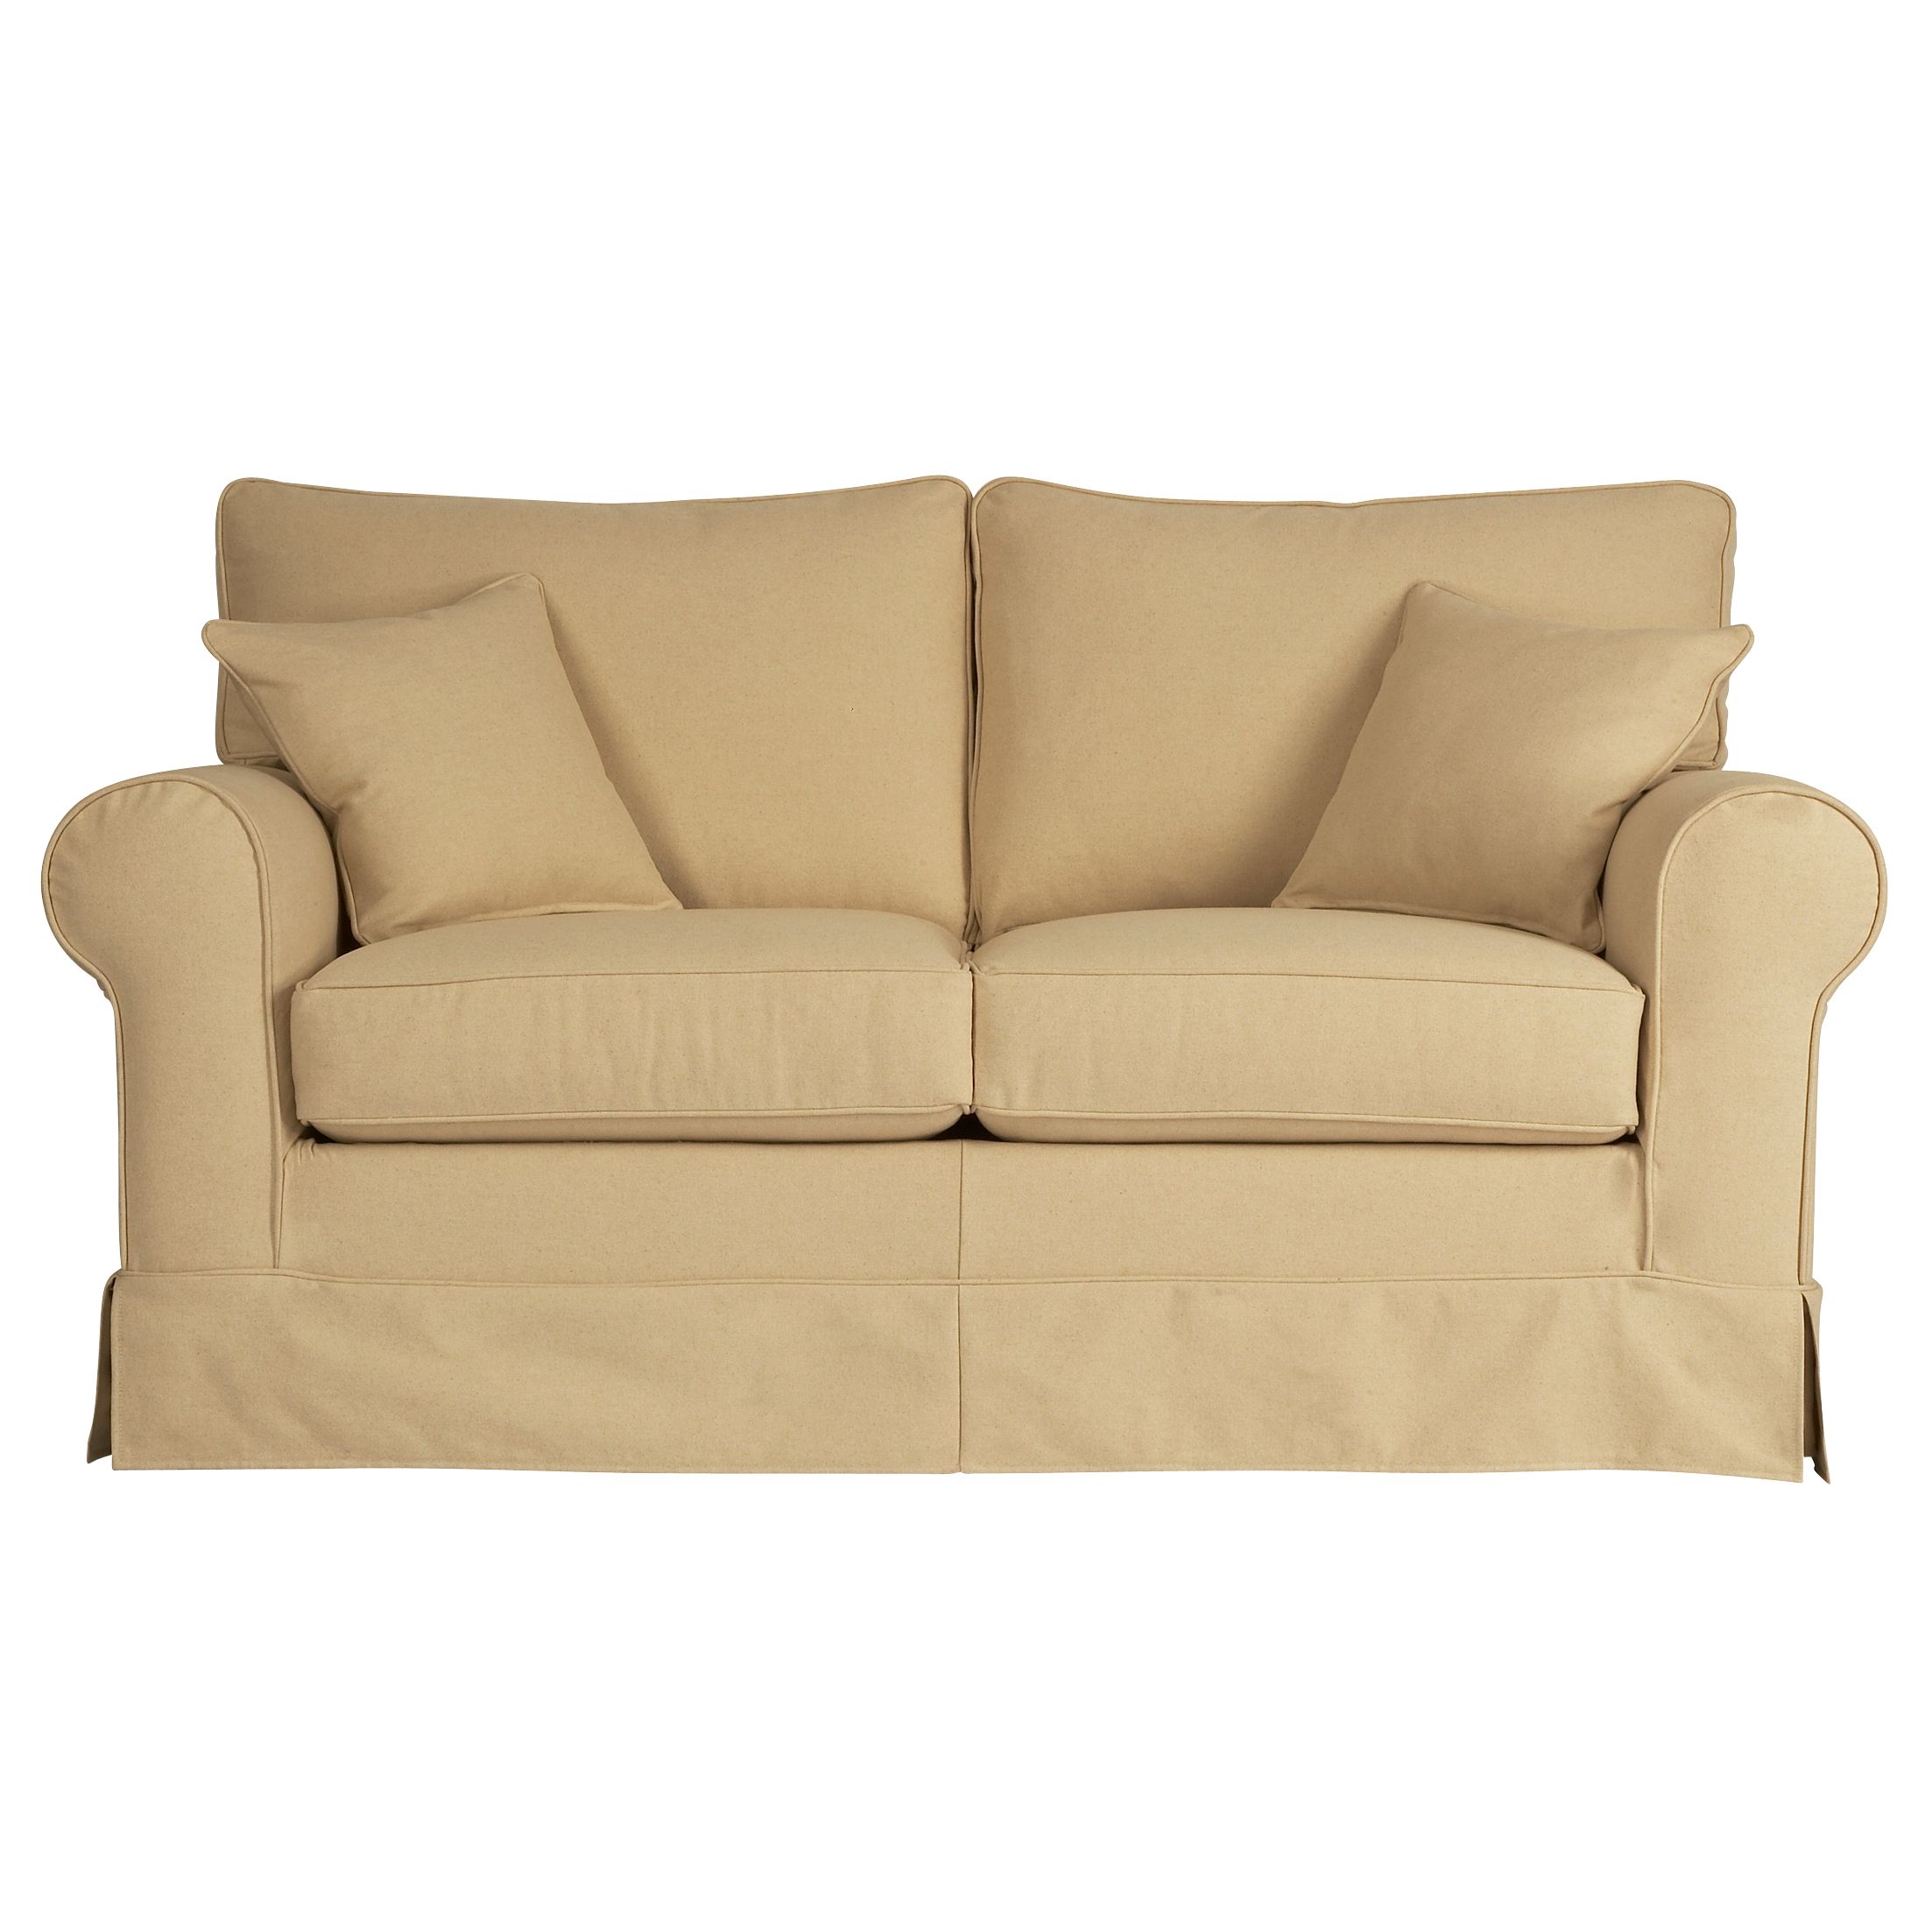 Padstow Medium Sofa Bed, Cream